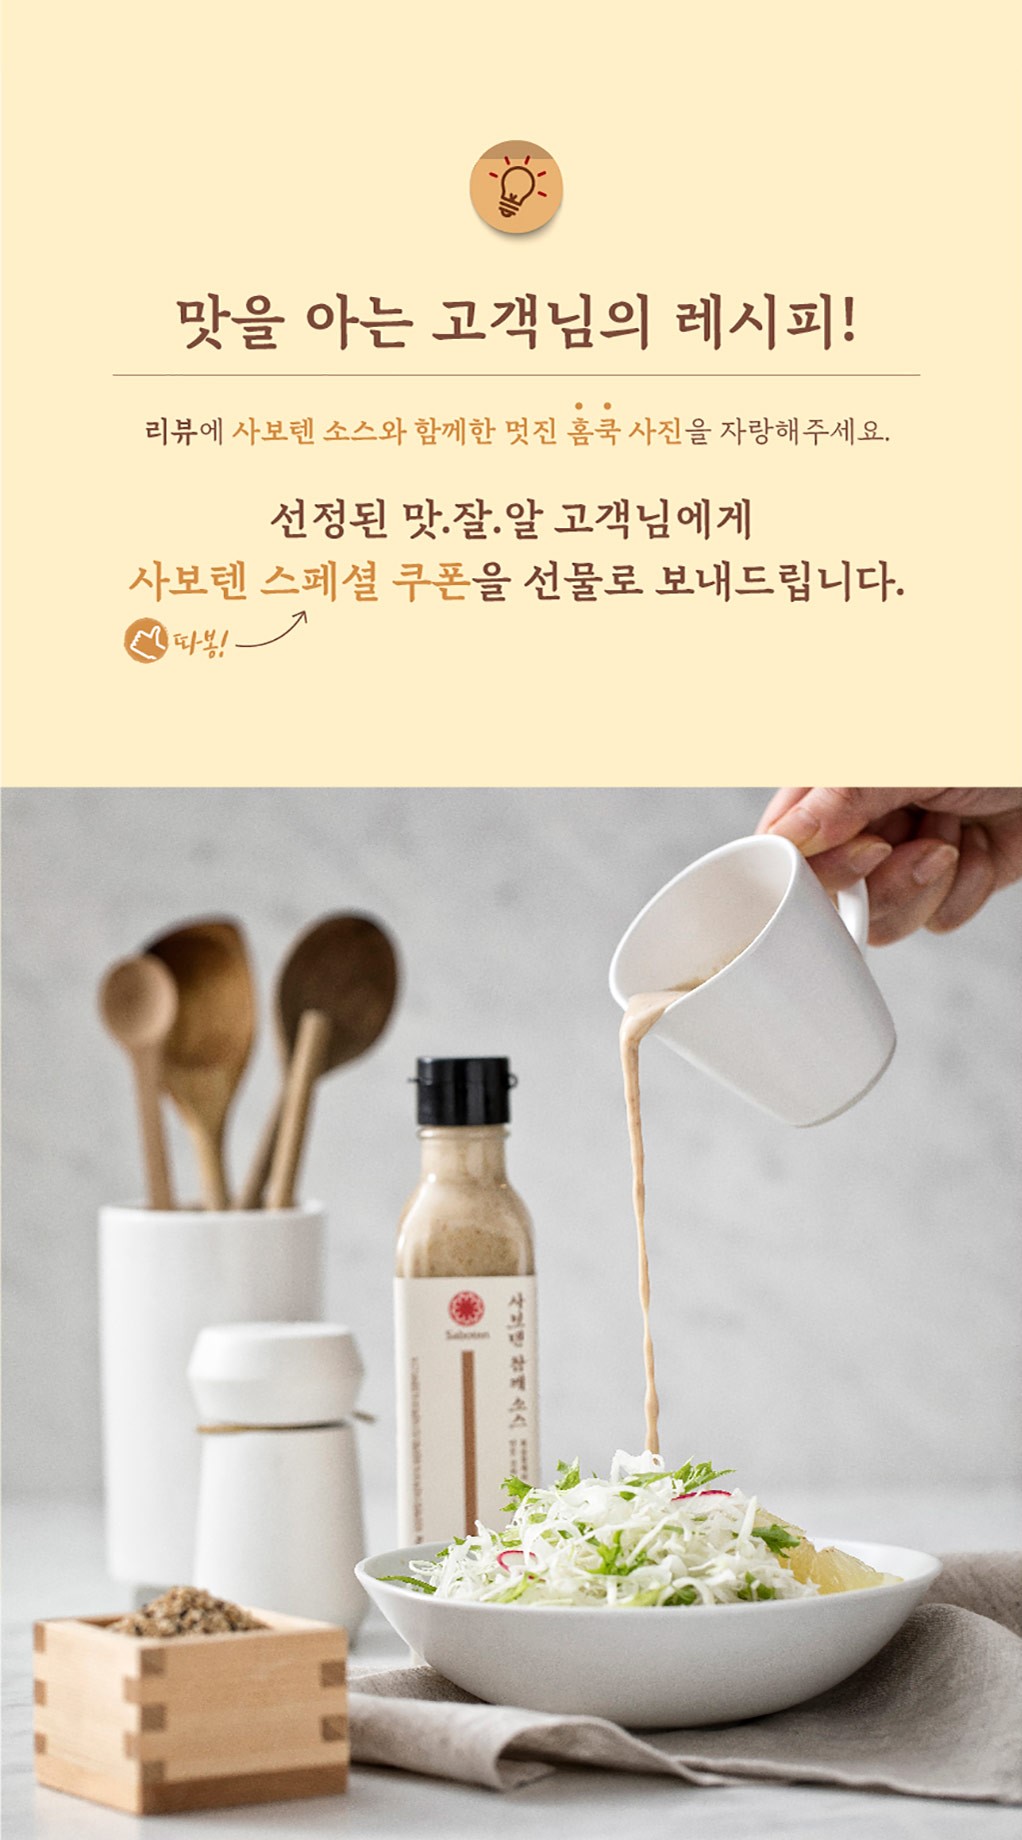 韓國食品-[Saboten] 芝麻醬 200g